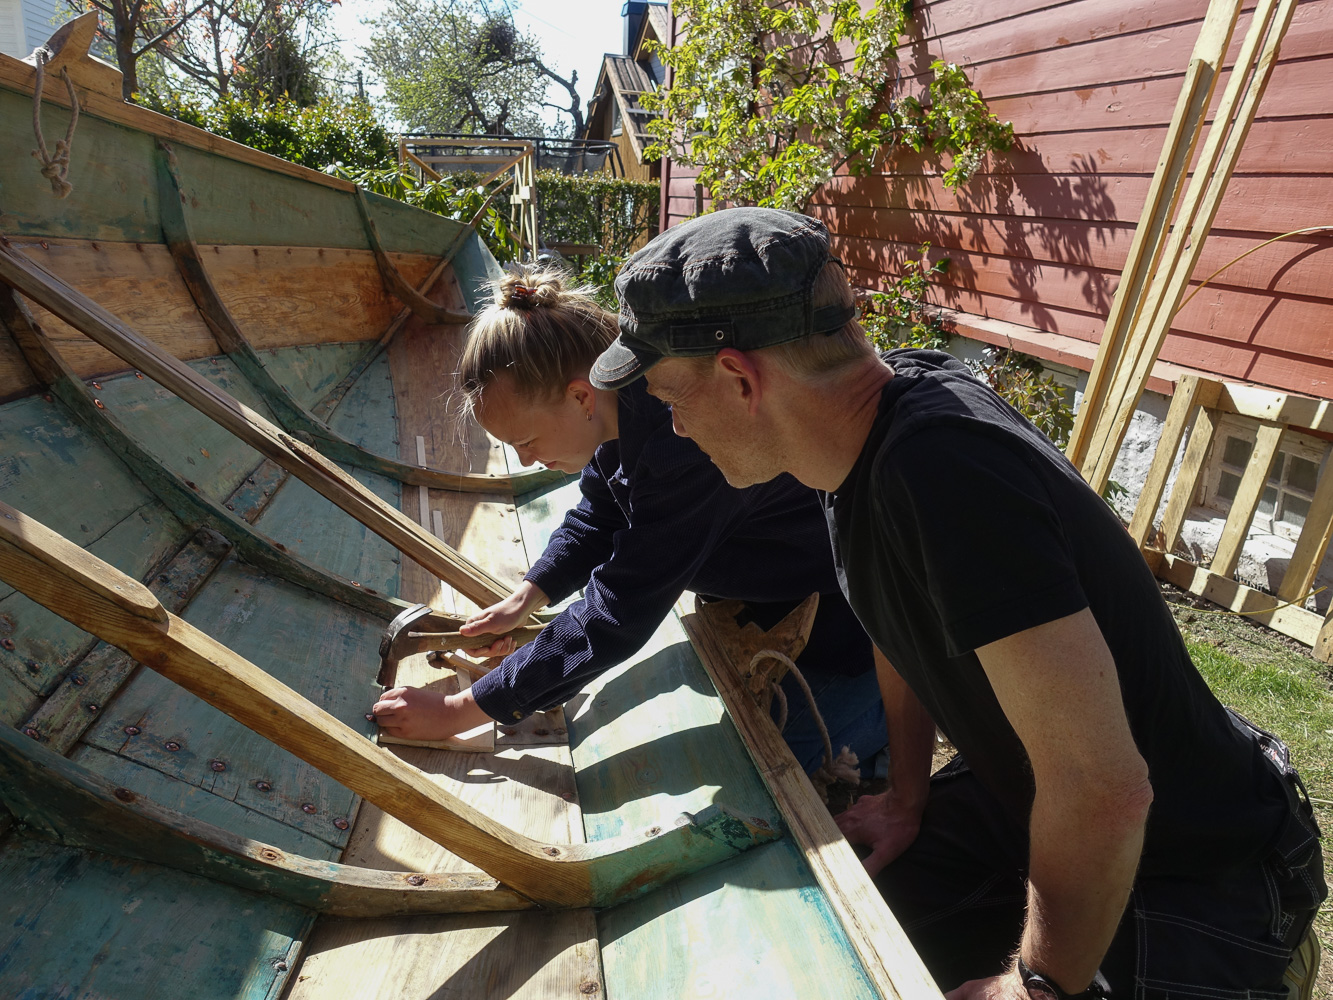 Marie klinker nye nagler i færingen // Renovating our old wooden boat